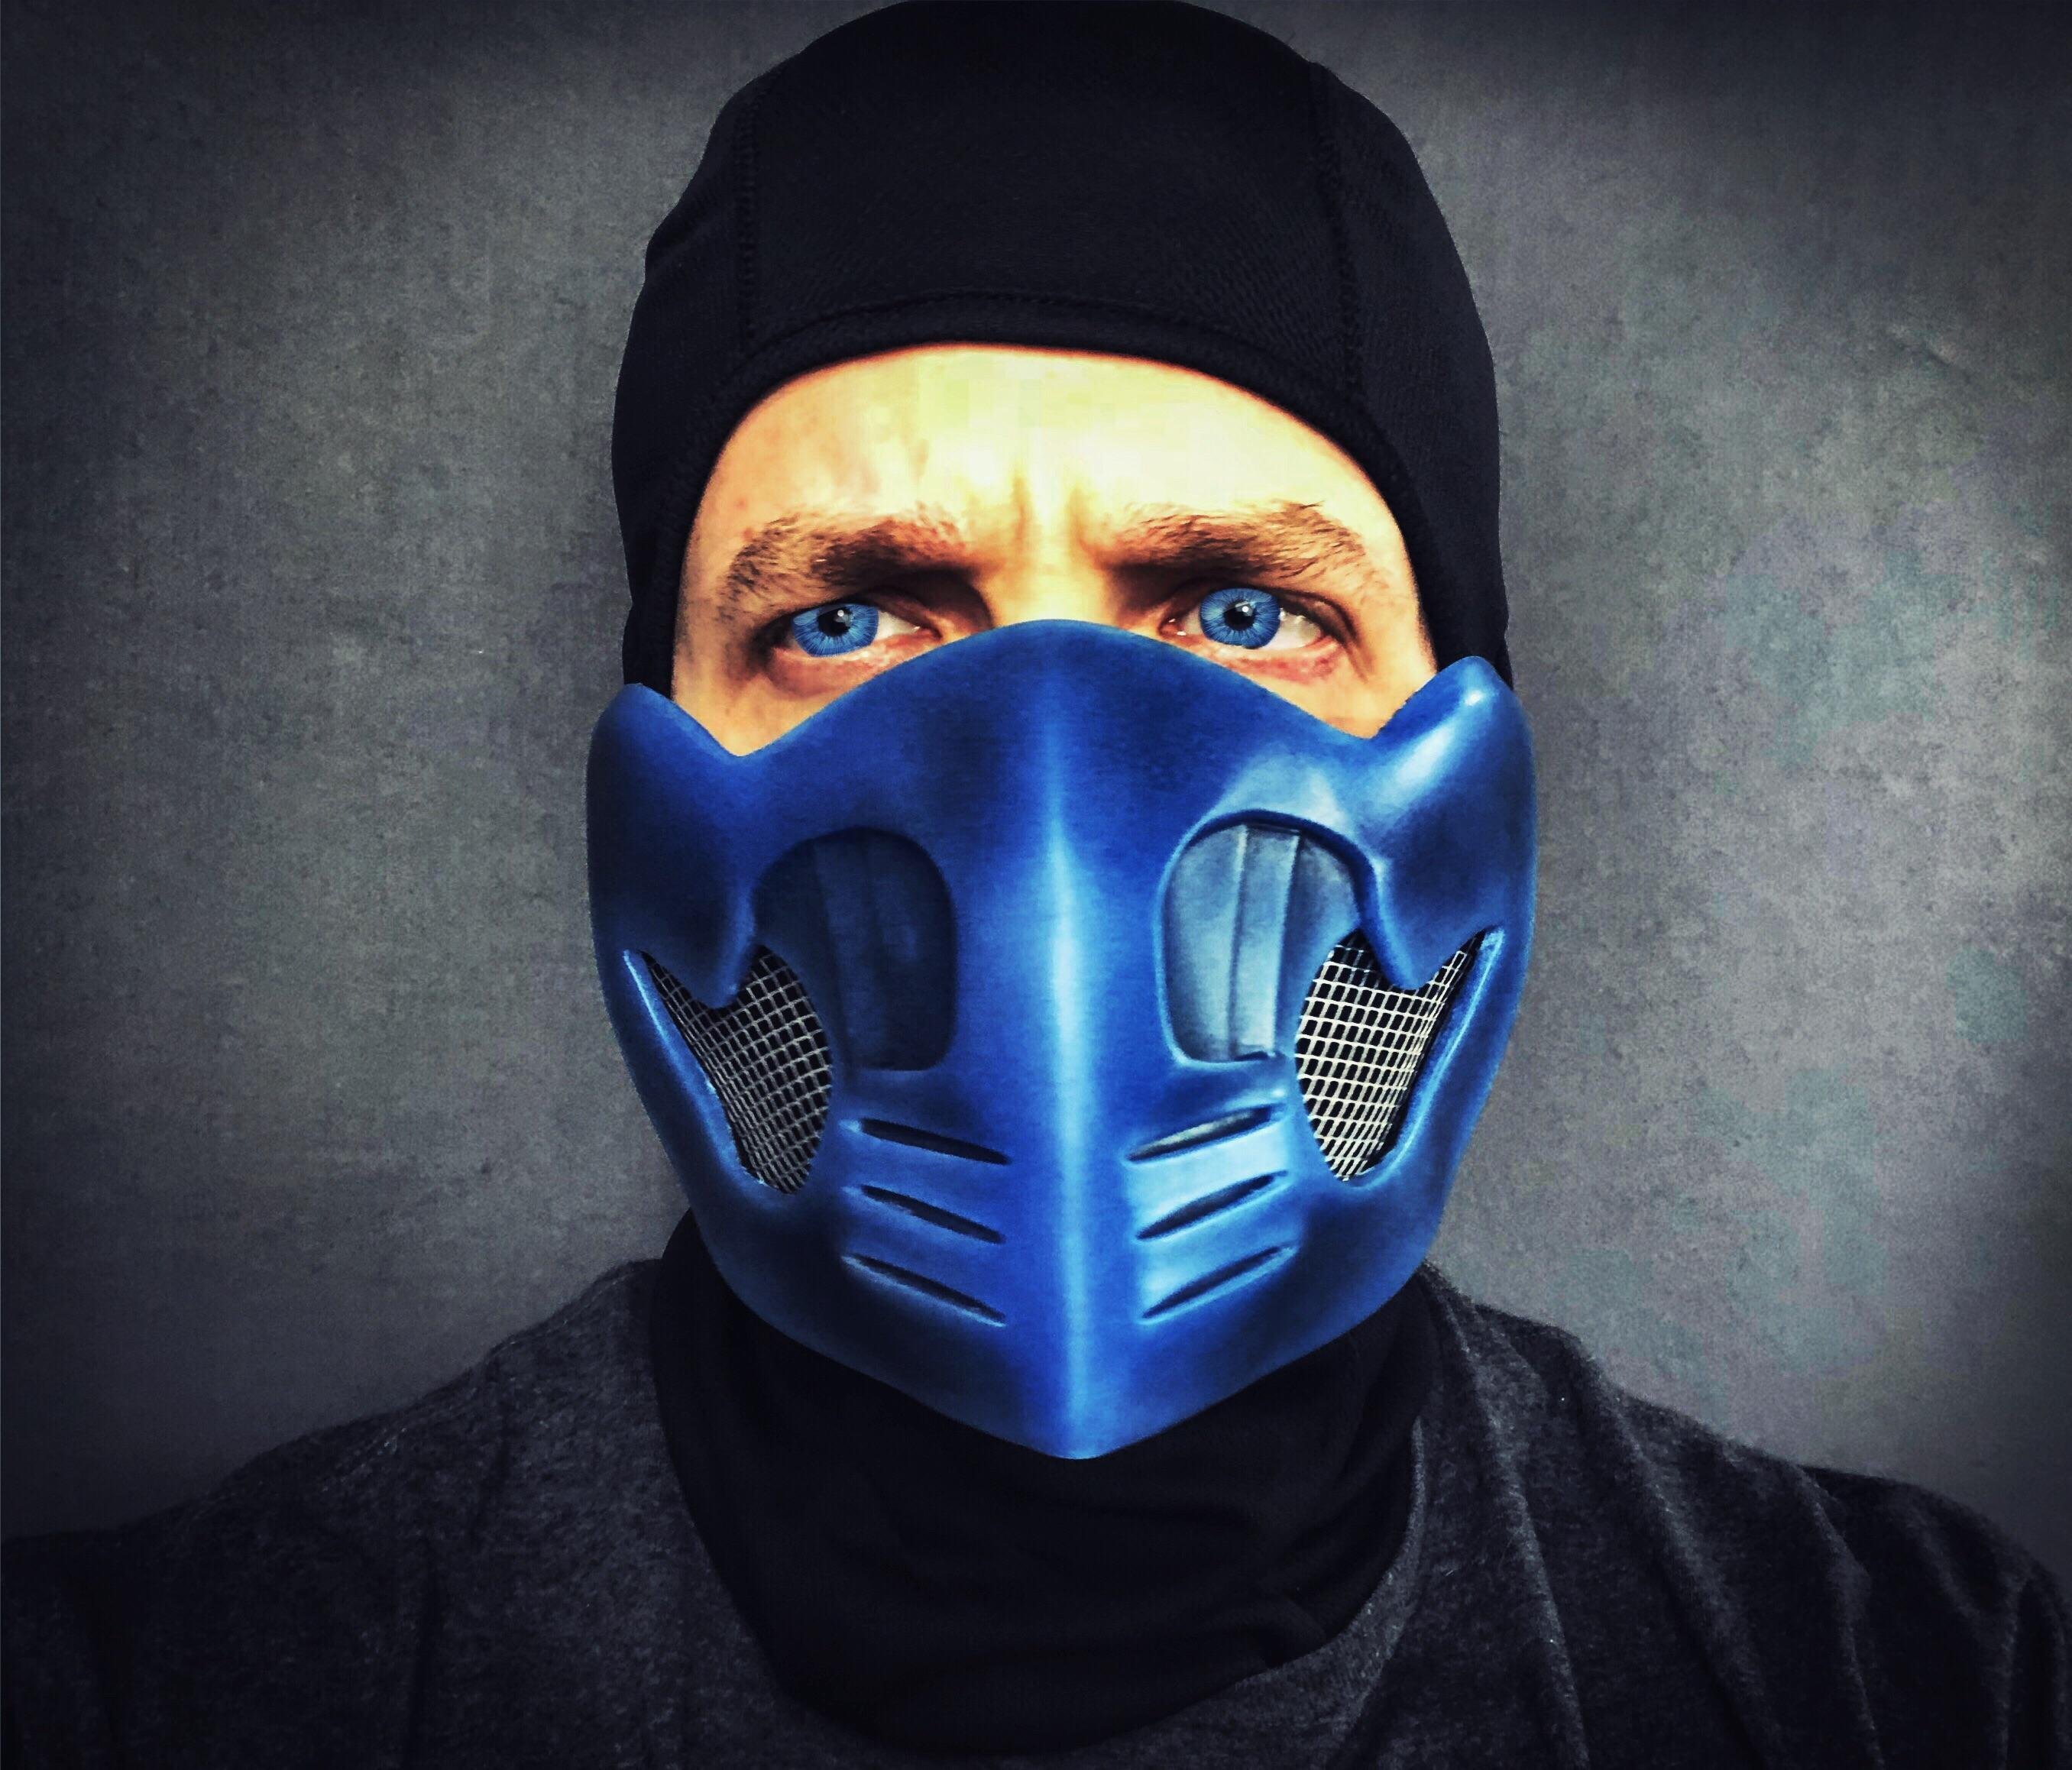 Видео там маска. Мортал комбат маска саб Зиро. Сабзиро мортал комбат маска саб Зиро. Mortal Kombat саб Зиро маска. Защитная маска саб Зиро.